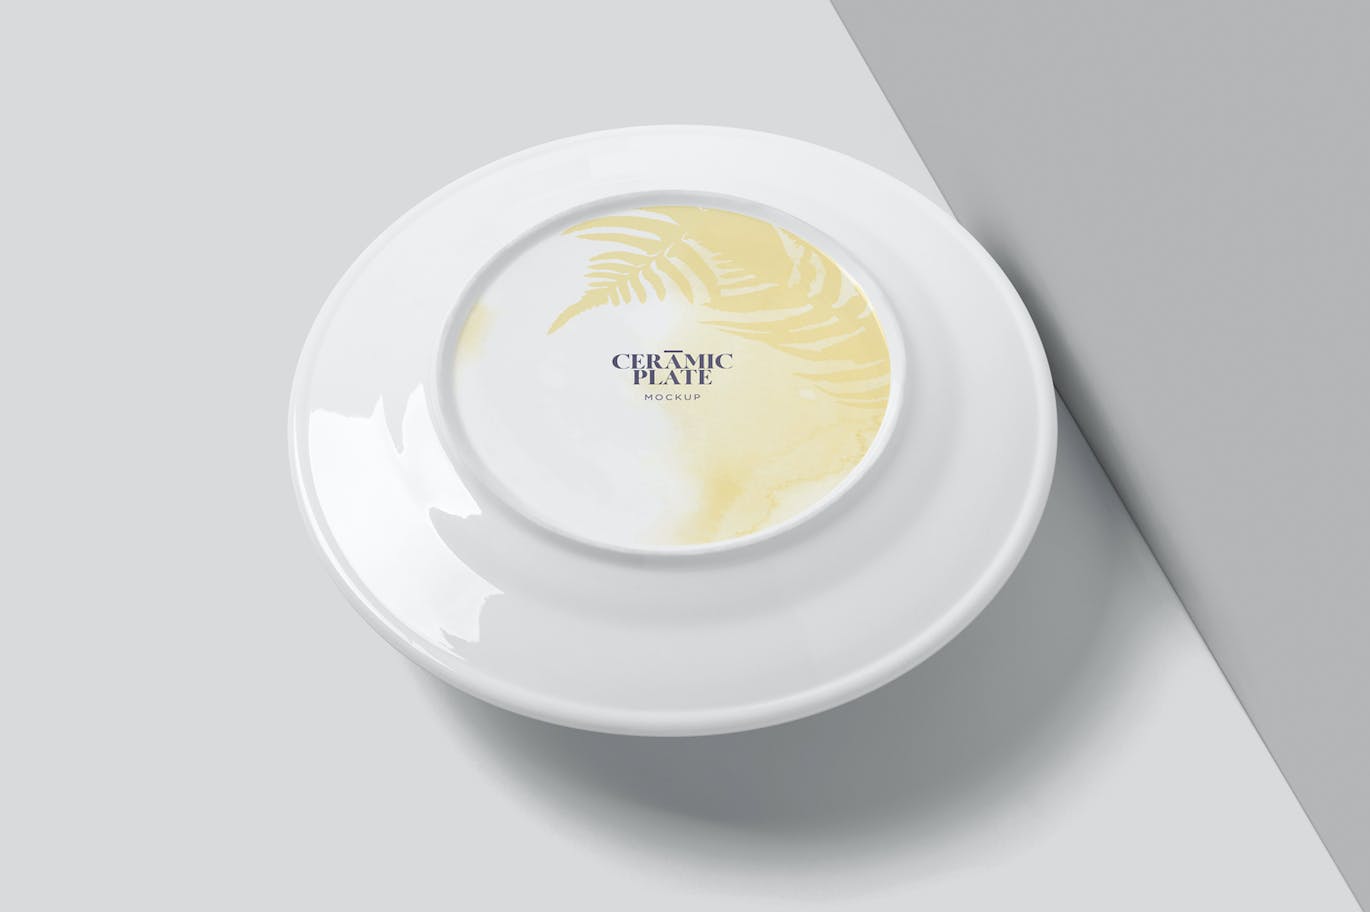 陶瓷盘子陶器品牌设计样机 Ceramic Plate Mockups 样机素材 第3张